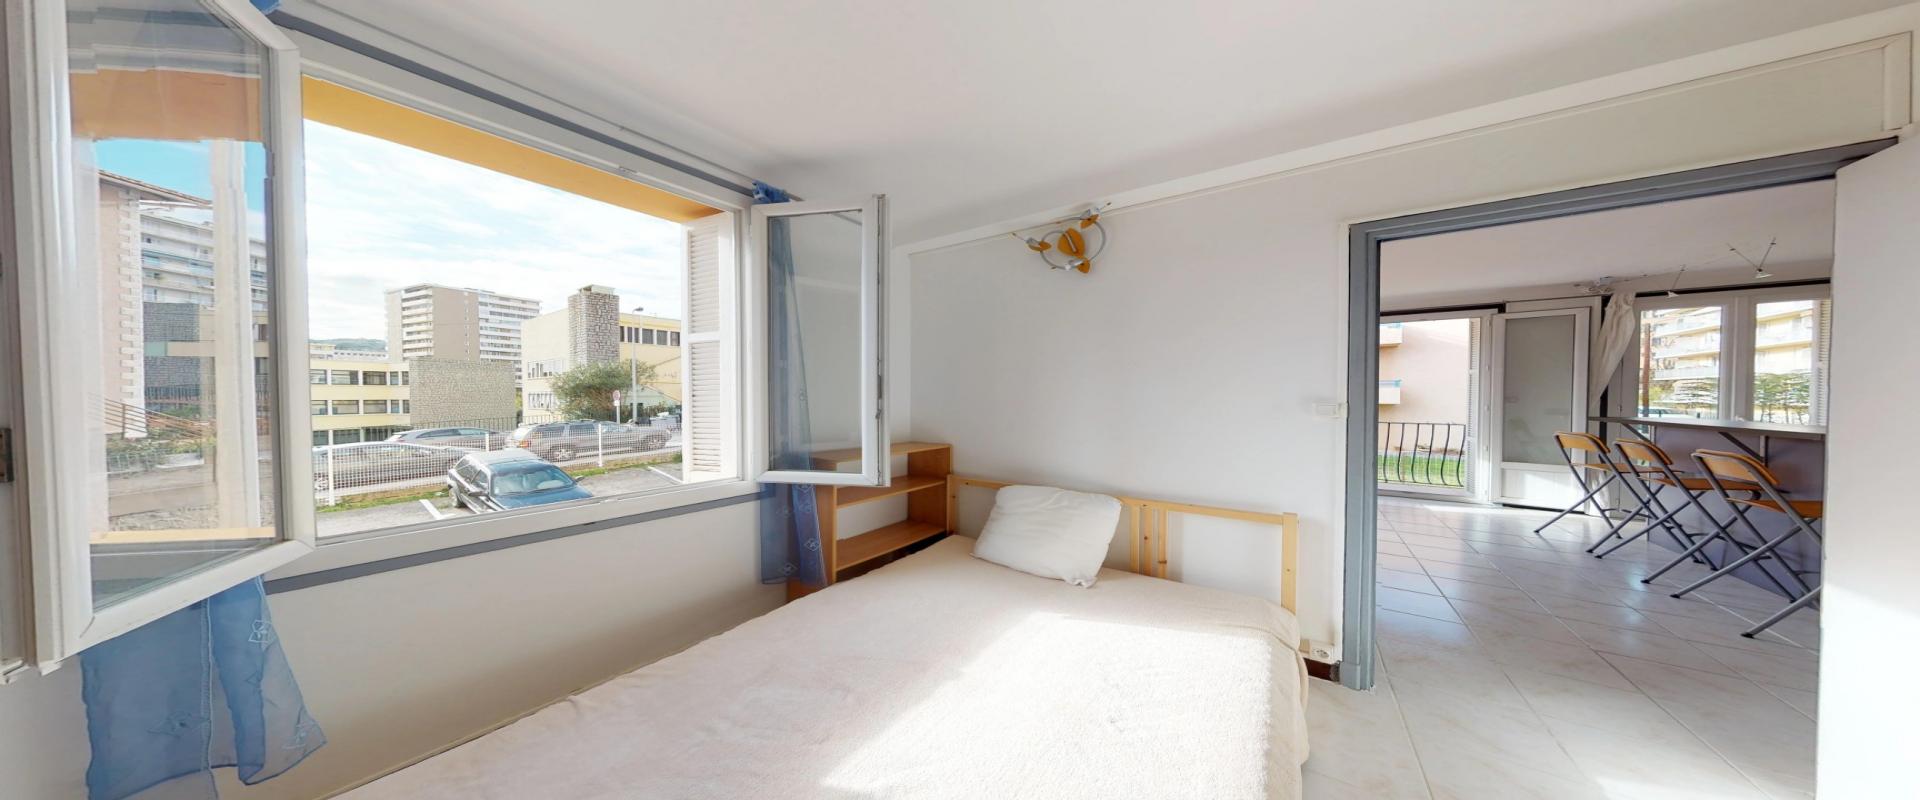 En Corse, à Ajaccio, un appartement de type F2 d'une superficie de 38 m² avec balcon, quartier Saint Jean